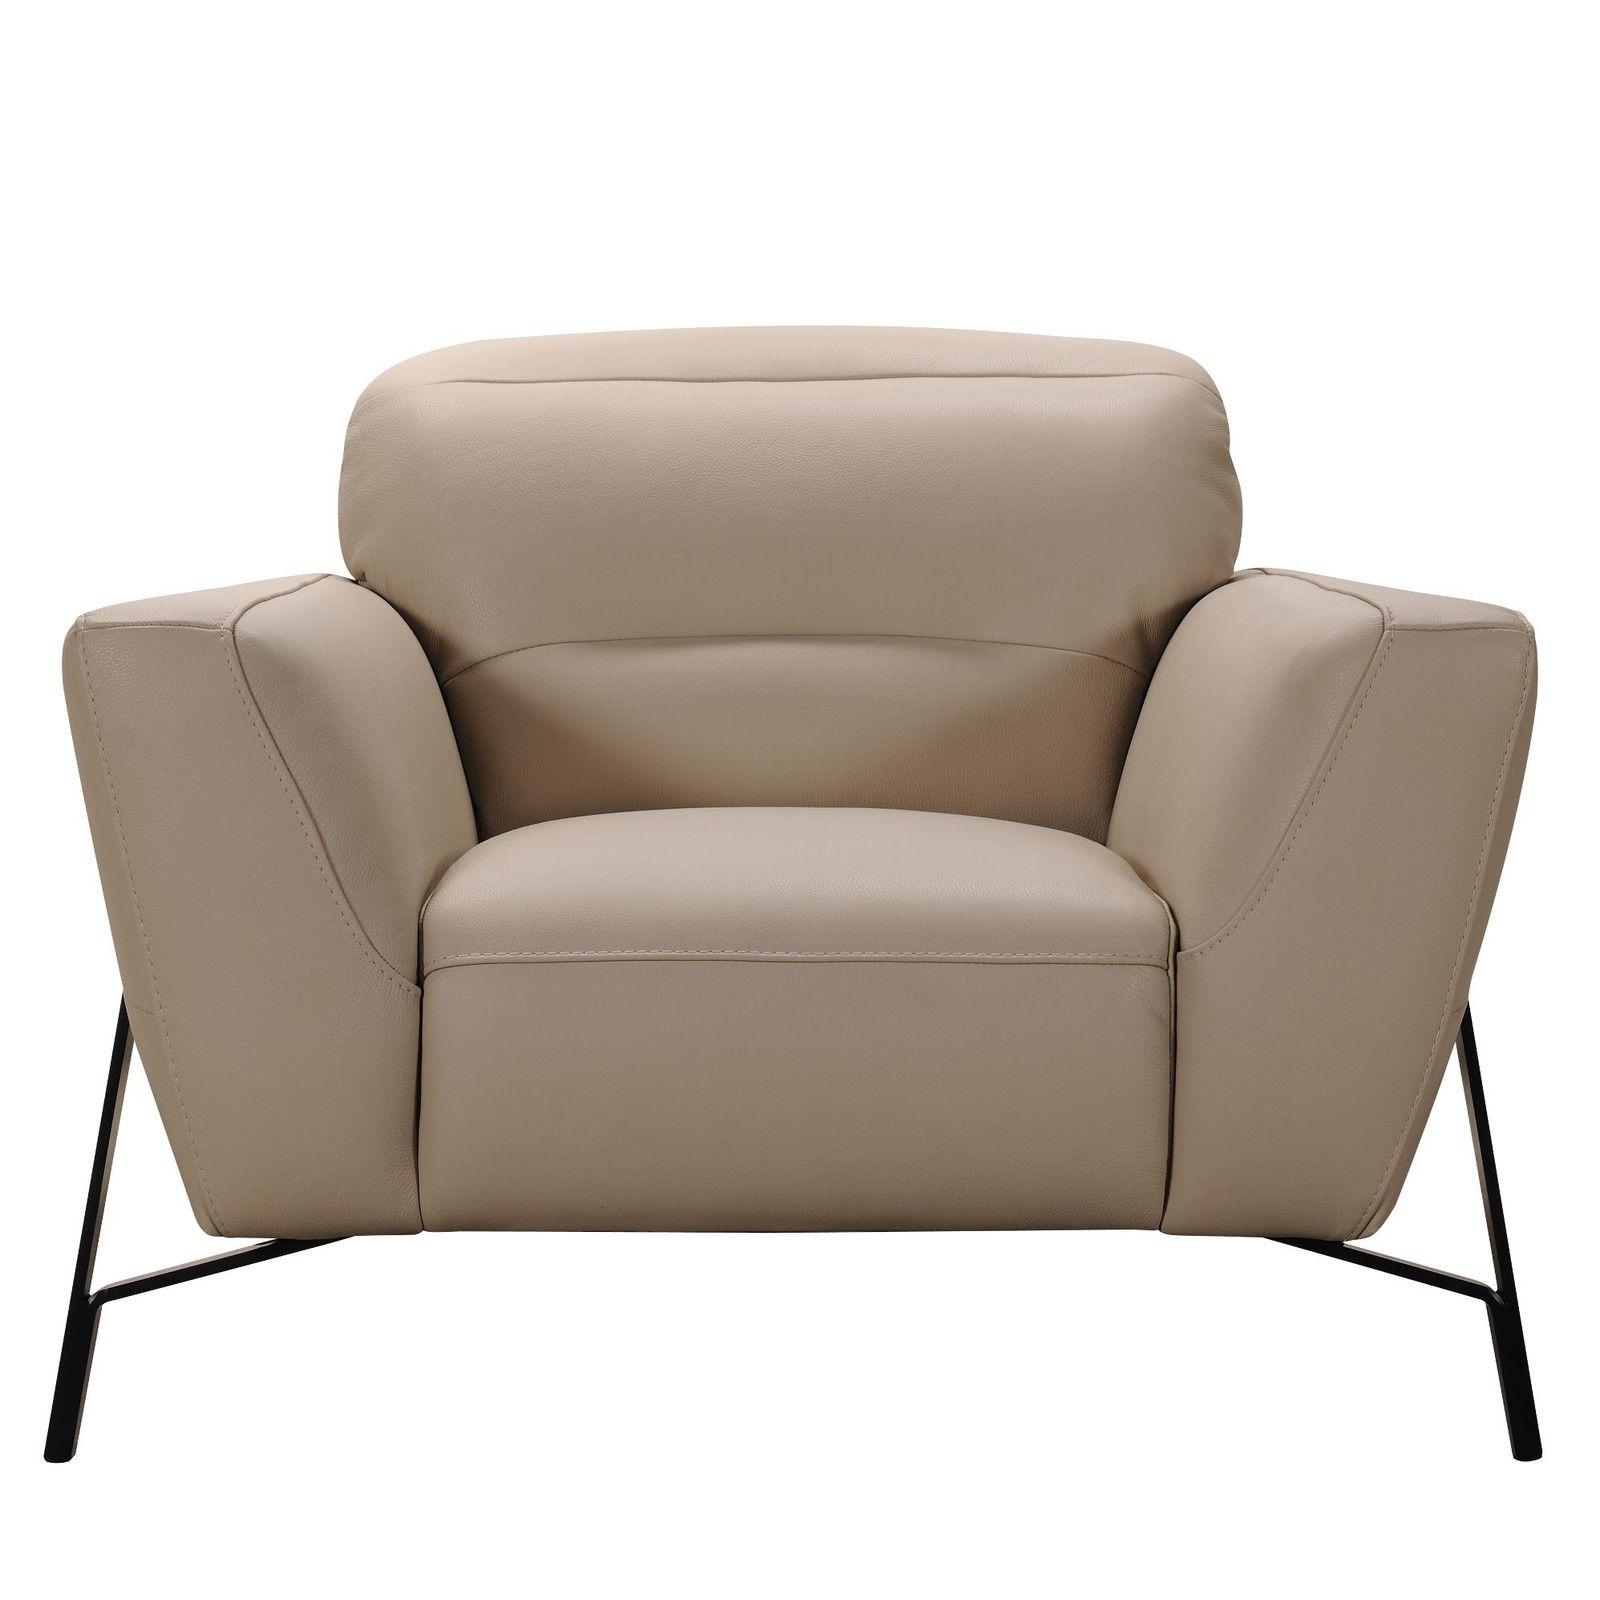 

        
VIG Furniture Divani Casa Evora Sofa Set Taupe/Earth-Tone Leather 00840729144421
